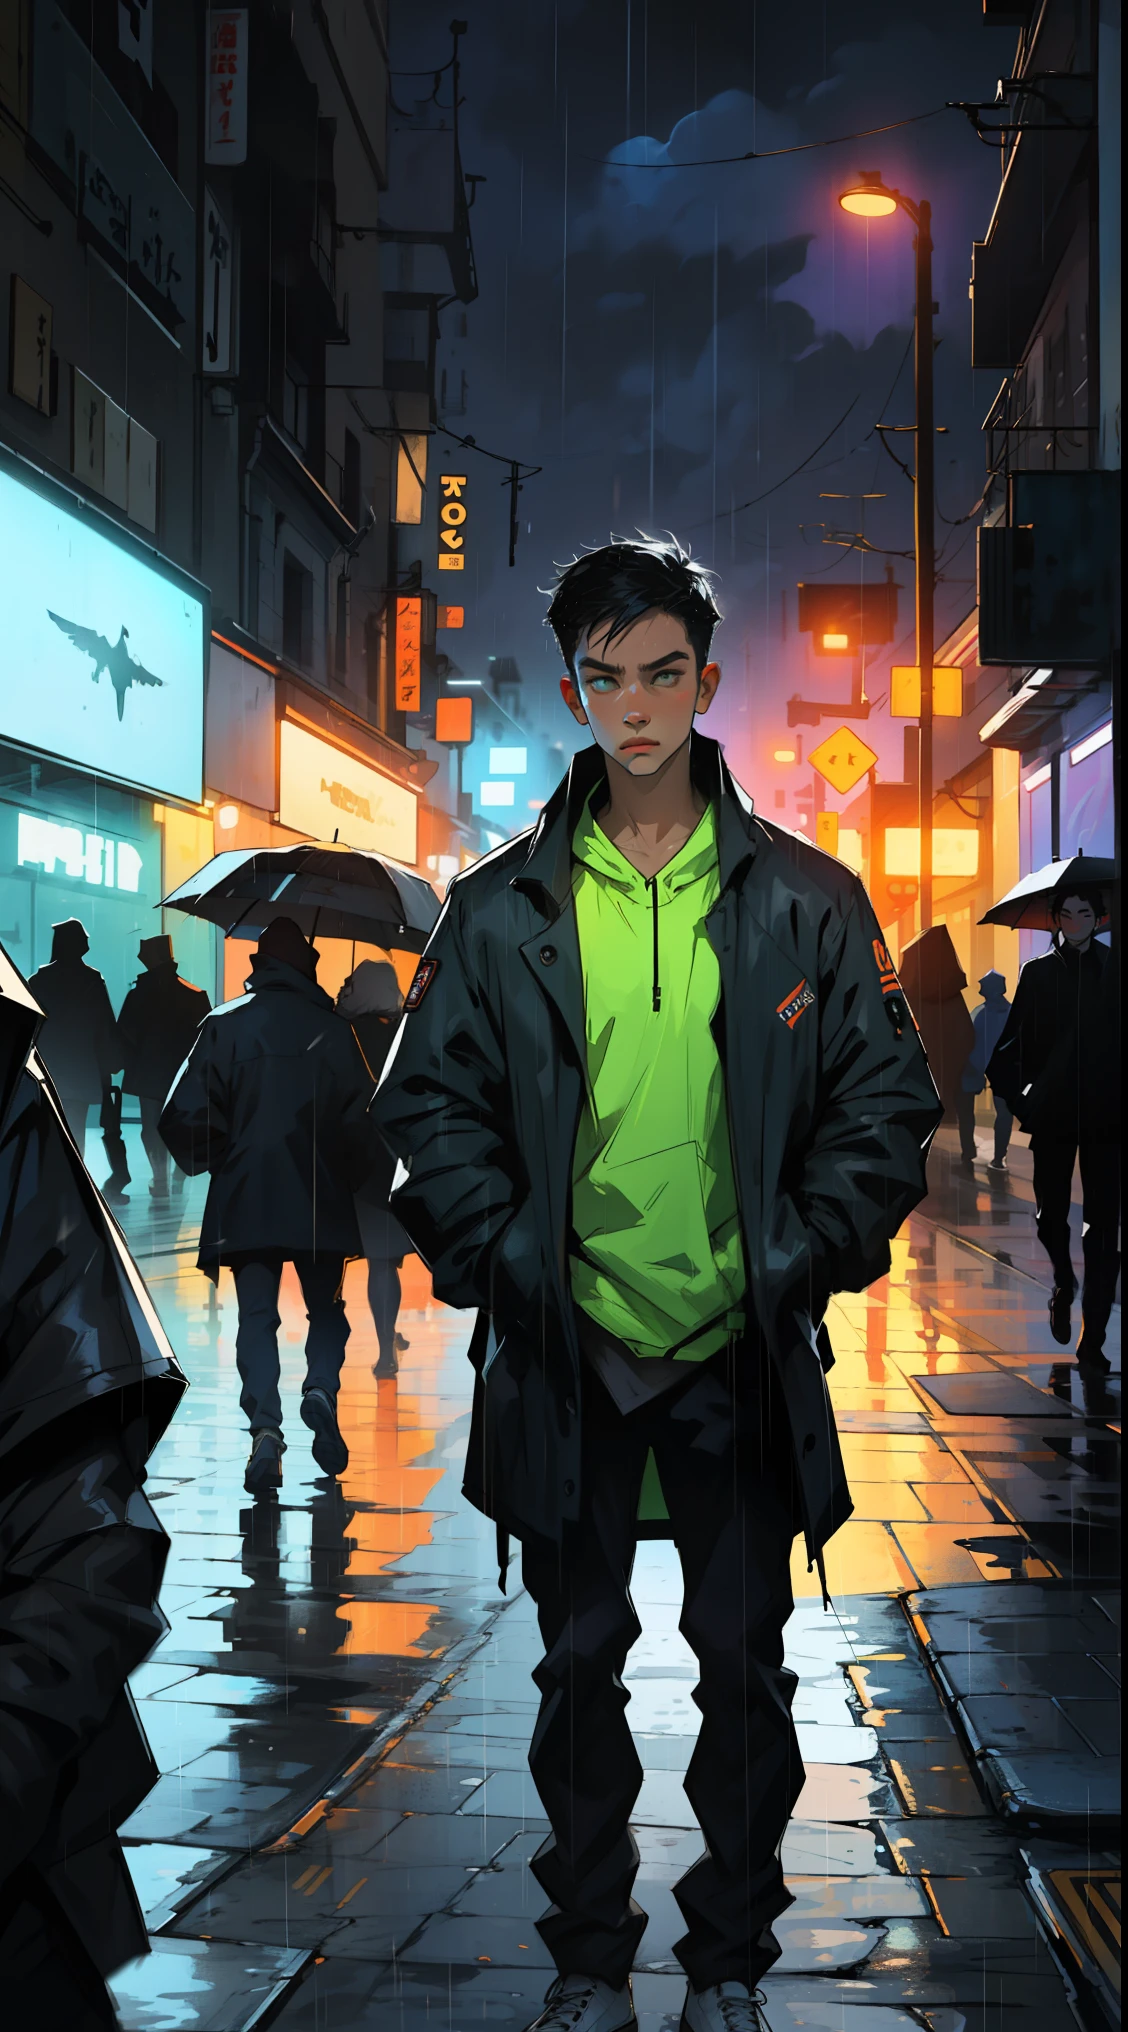 1 mâle,ville de nuit,pluie,manteau,les mains dans les poches, néon, fuites de lumière, couleurs vives, teintes audacieuses.